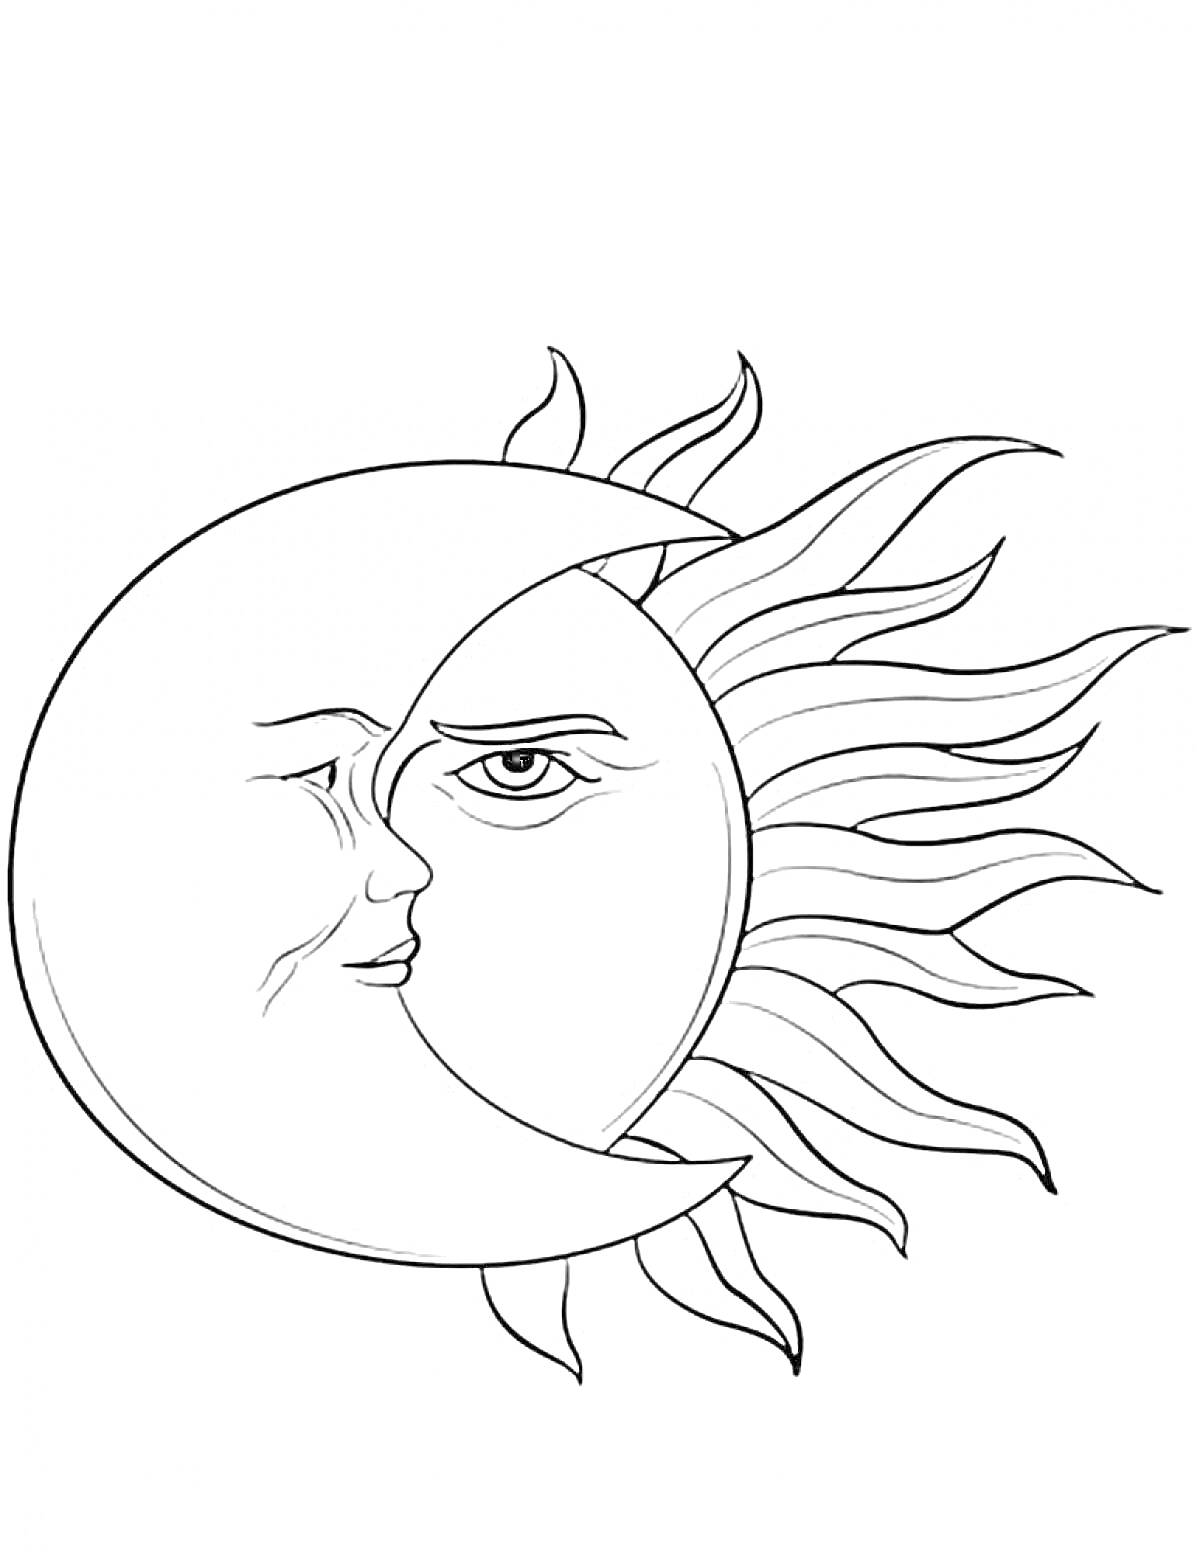 Раскраска Месяц и Солнце с лицами в форме полумесяца и солнечных лучей